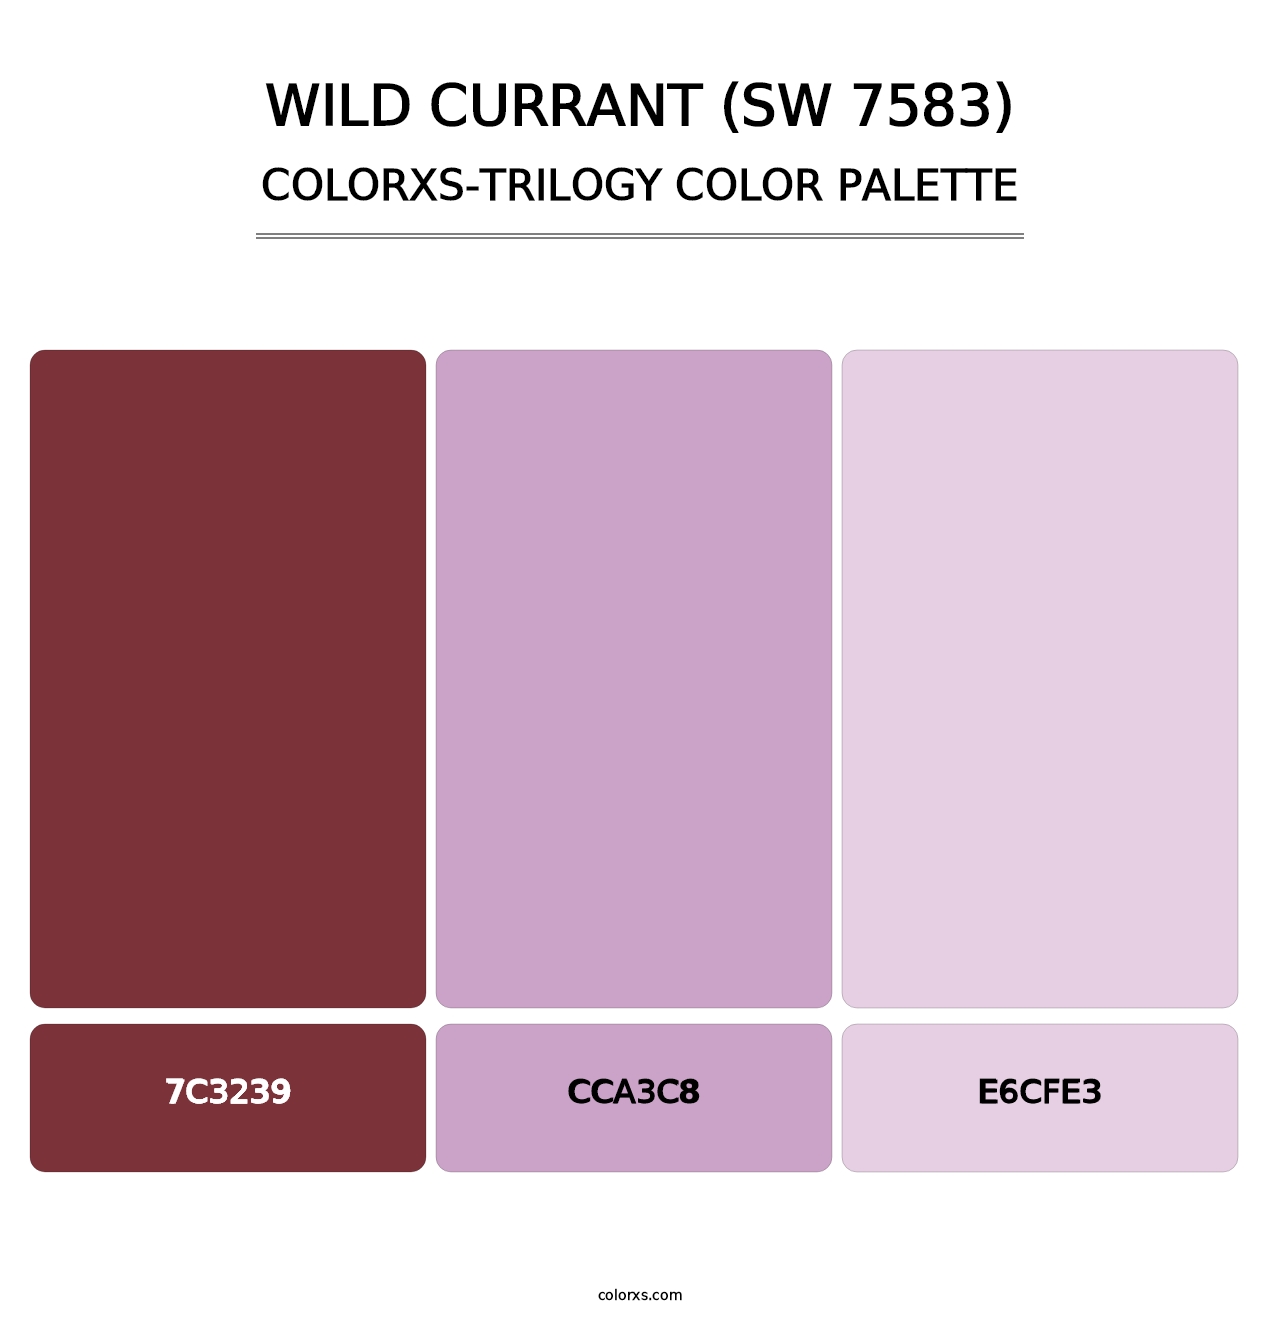 Wild Currant (SW 7583) - Colorxs Trilogy Palette